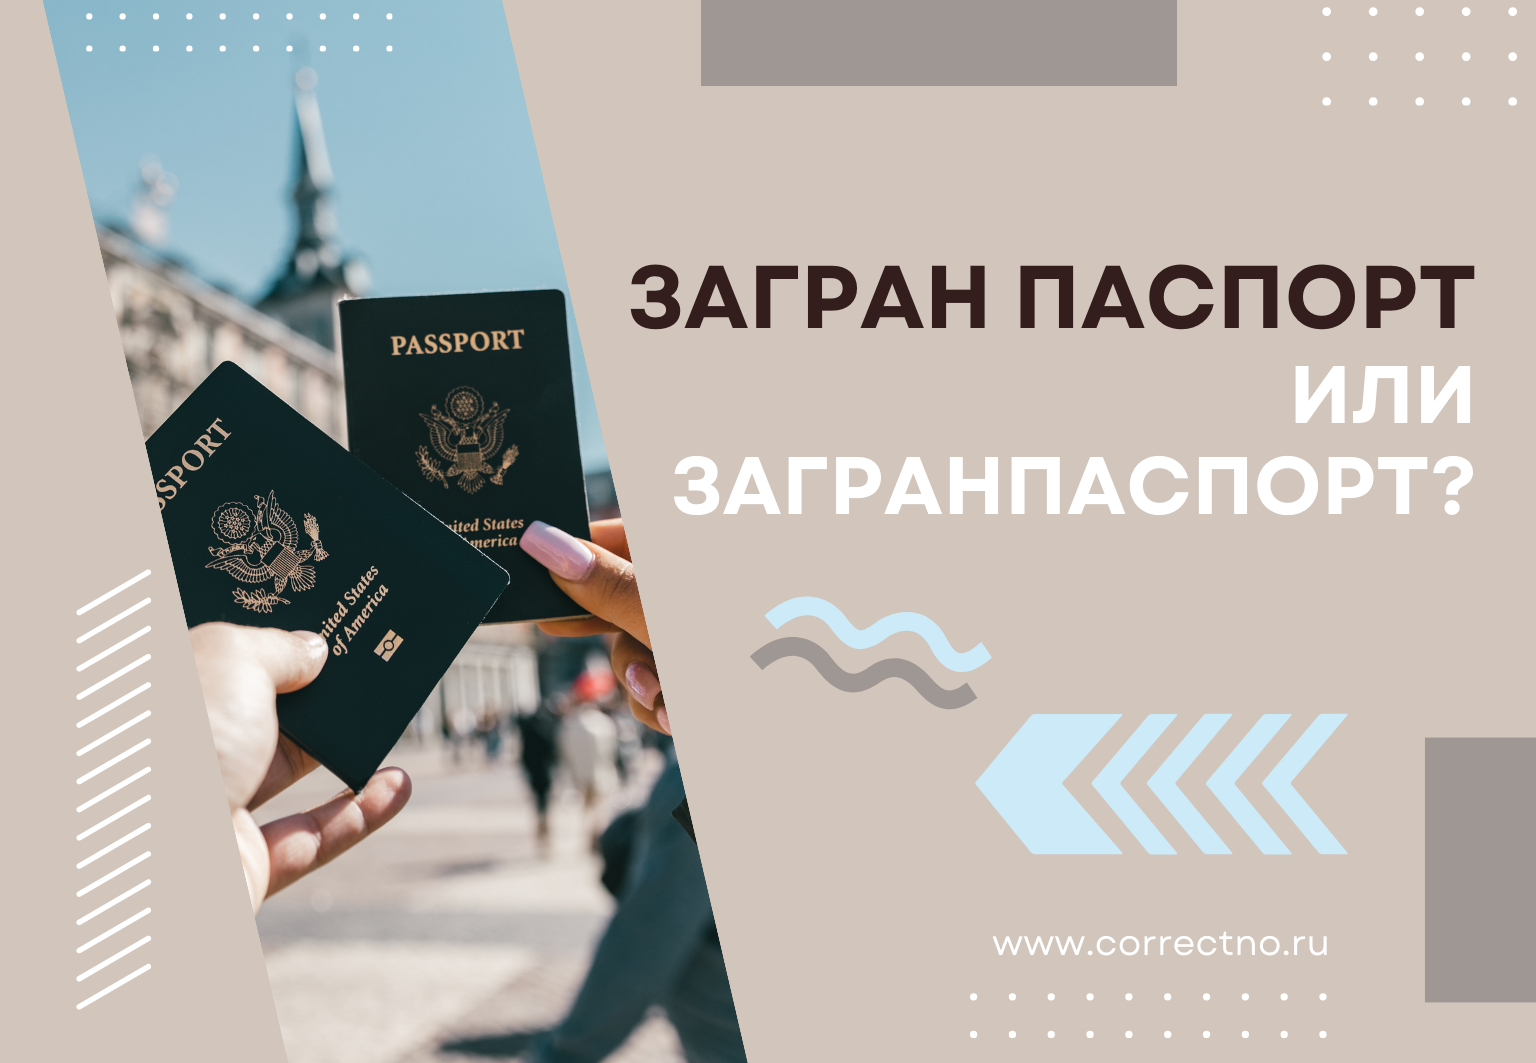 Загранпаспорт или загран паспорт: как правильно пишется слово? Слитно или раздельно?